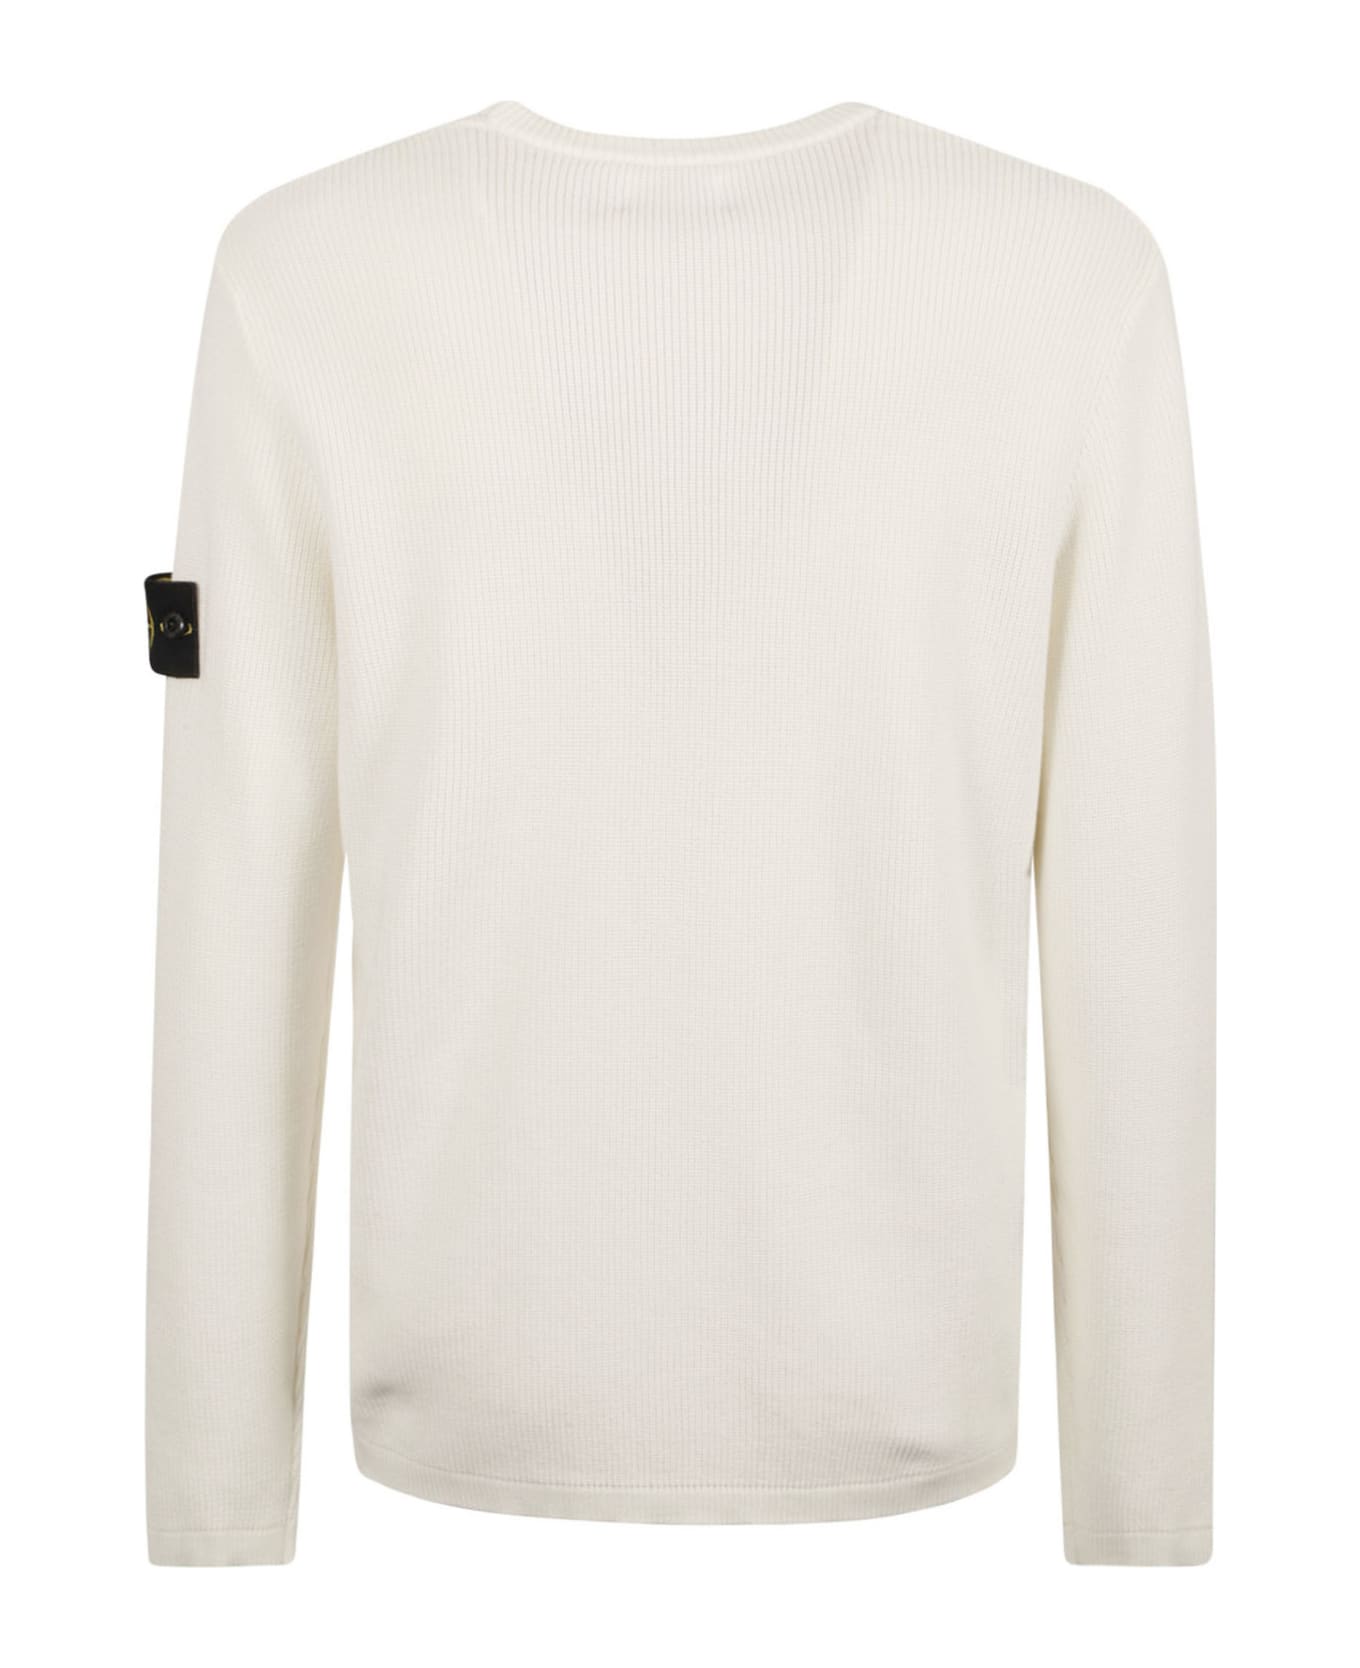 Stone Island Logo Patched Knit Crewneck Sweatshirt - White ニットウェア